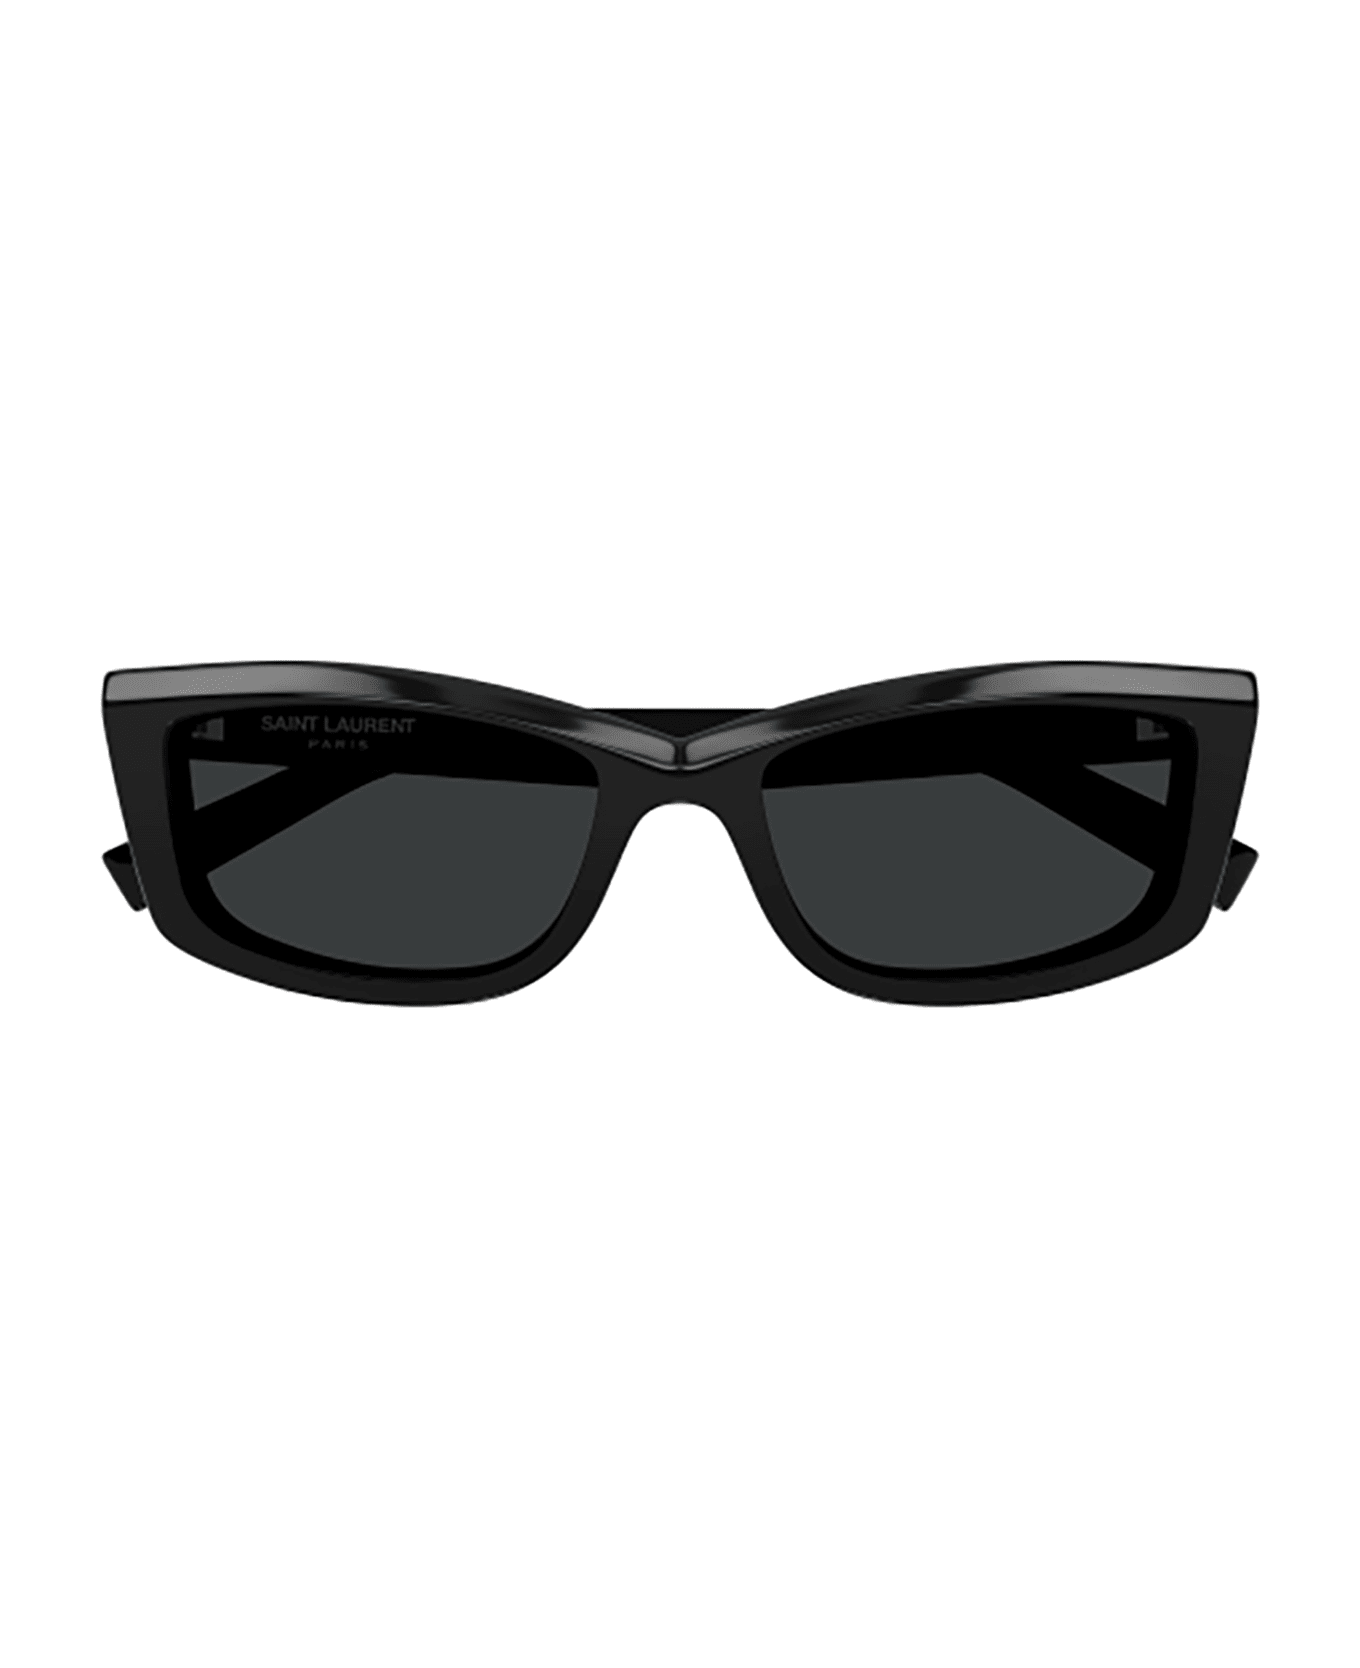 Saint Laurent Eyewear SL 658 Sunglasses - Black Black Black